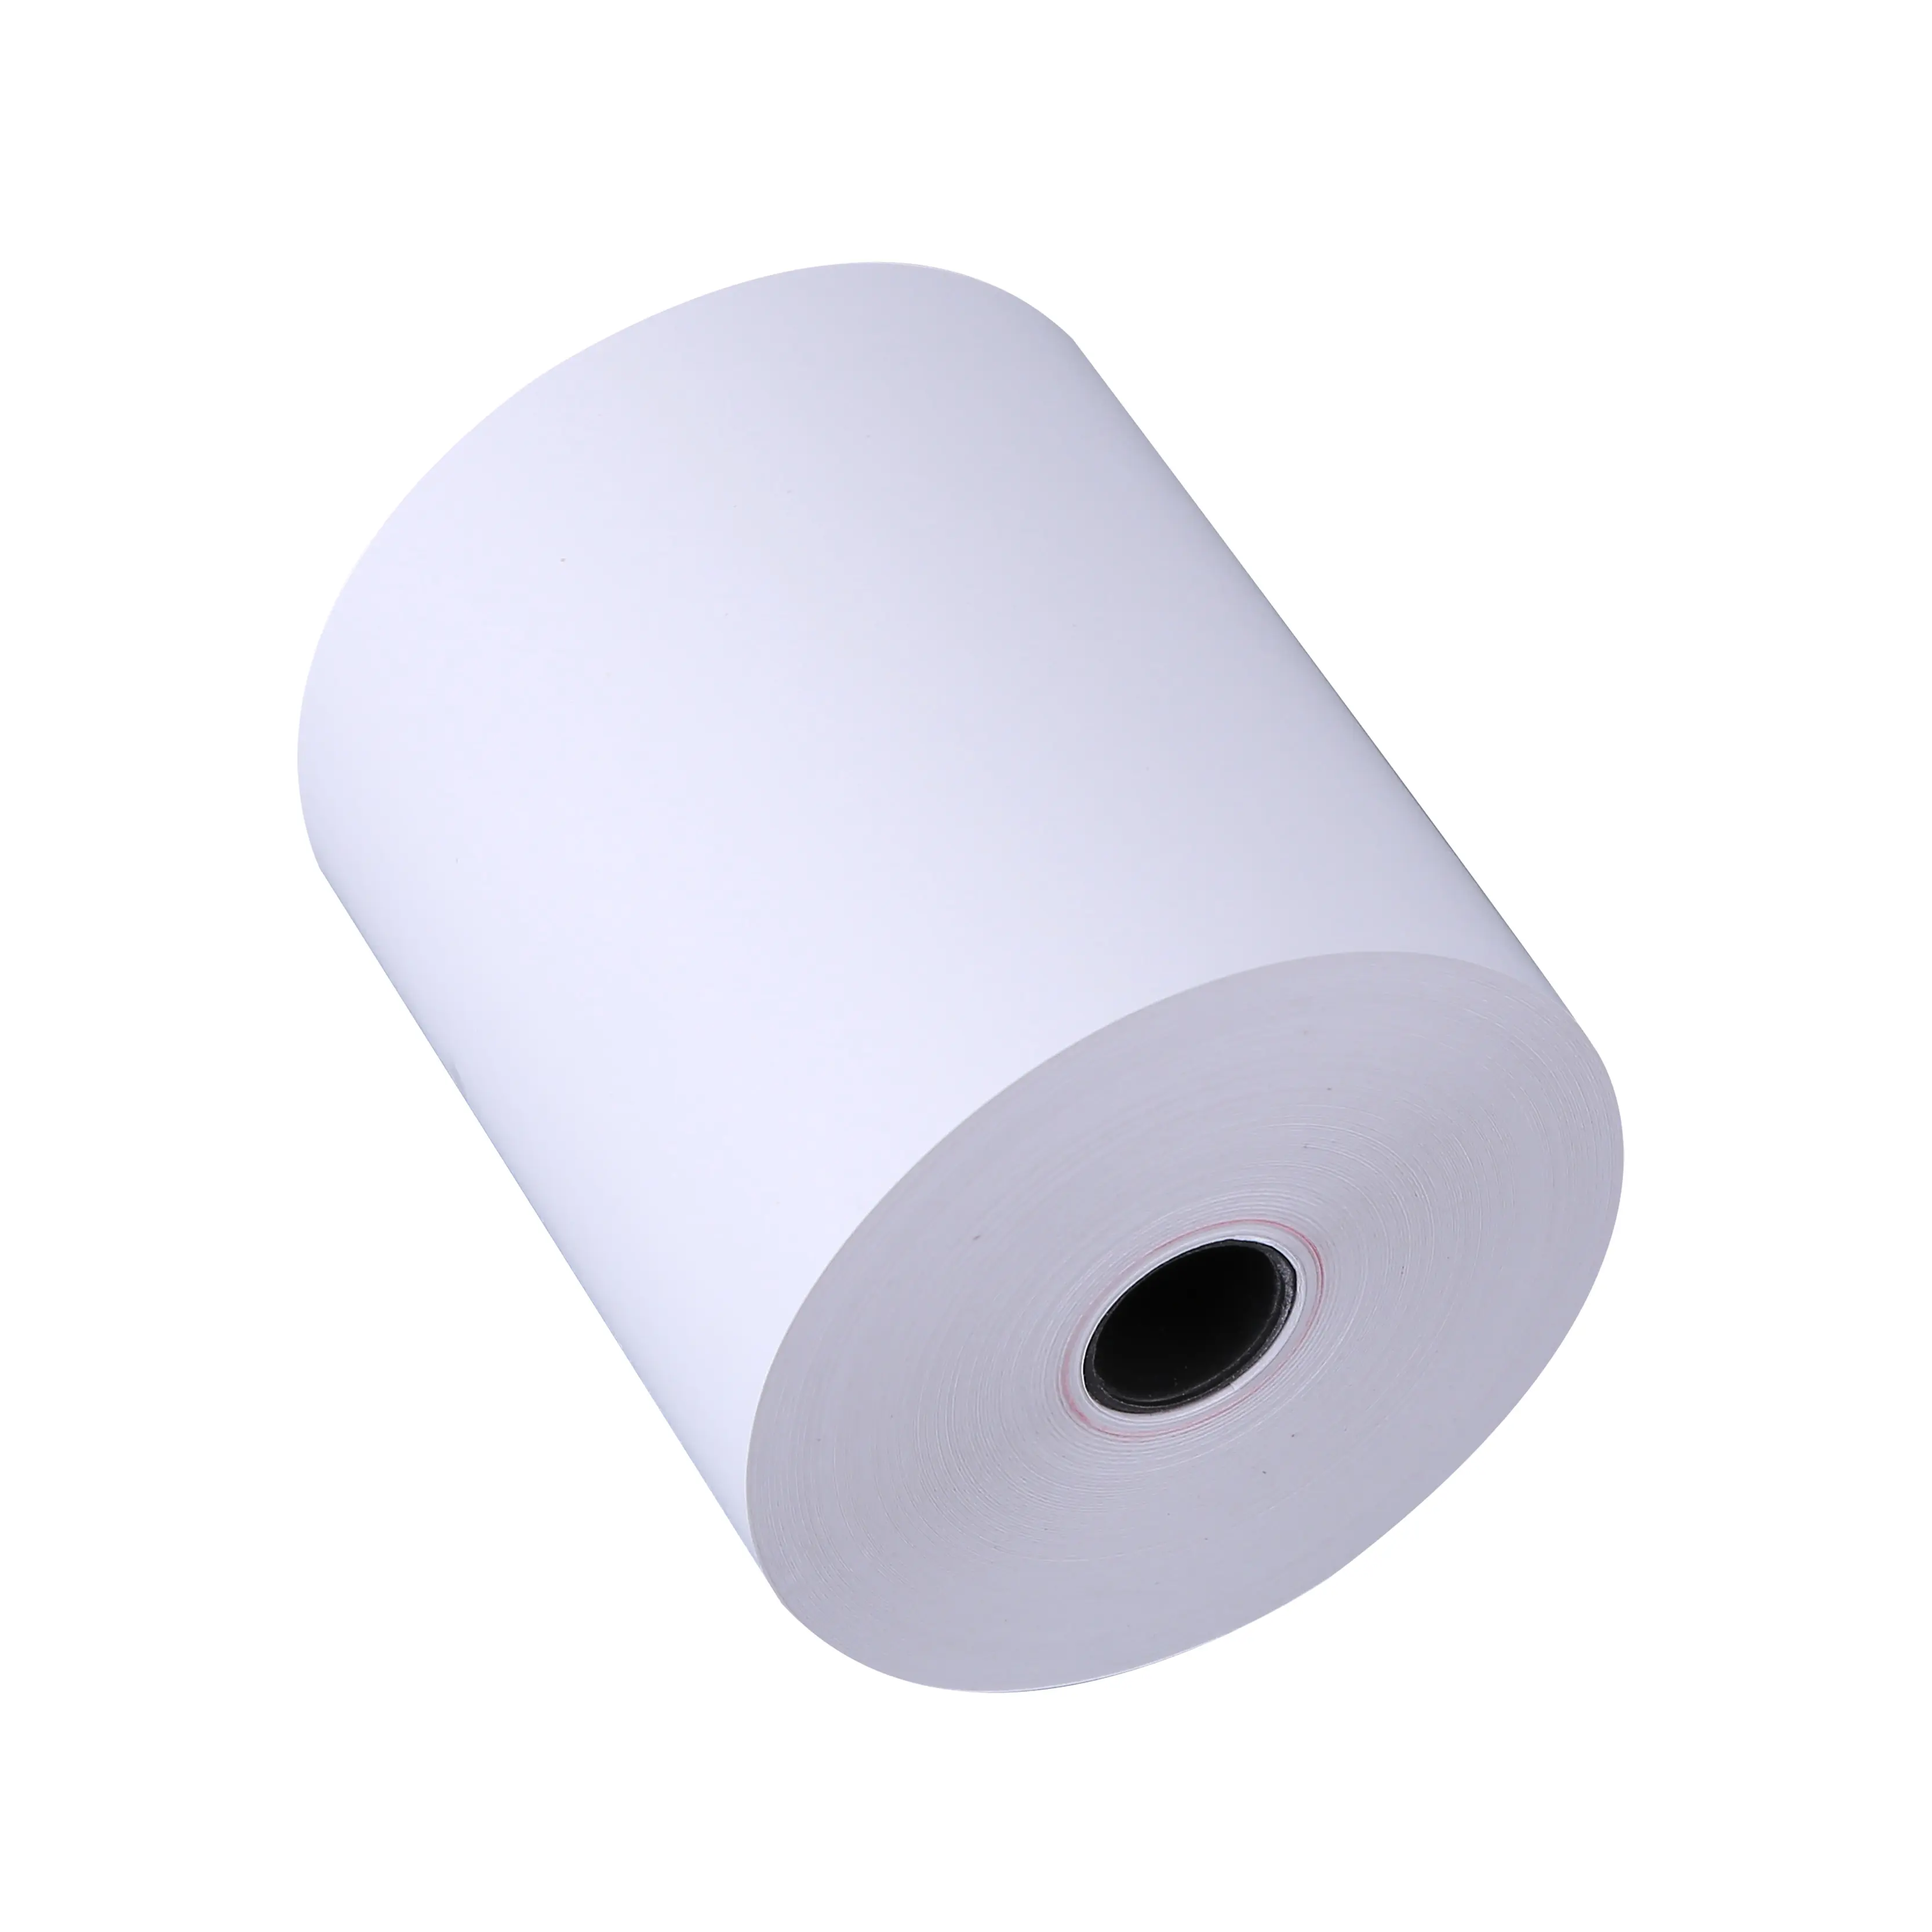 Accepter la taille personnalisée 80*83mm caisse enregistreuse Pos papier rouleau impression Jumbo papier thermique